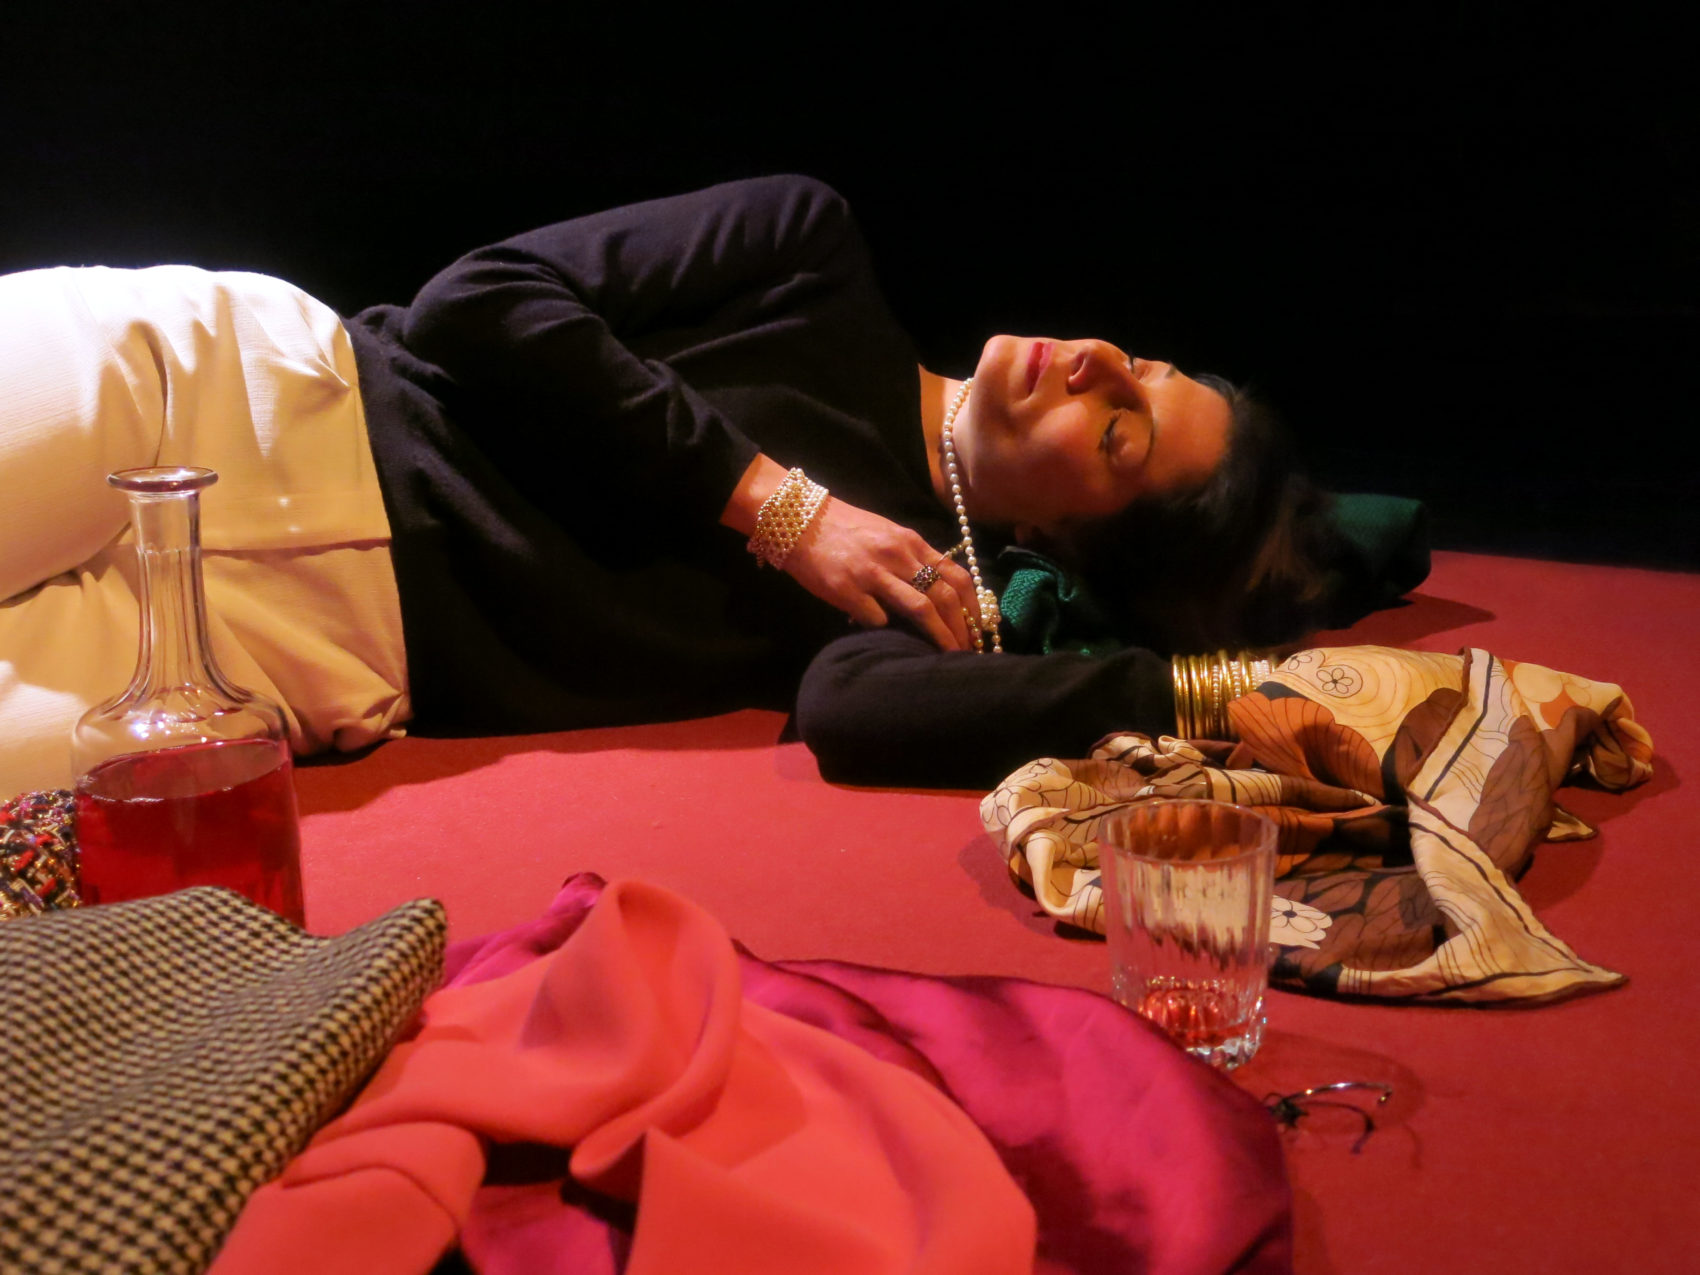 une femme allongée au sol avec un verre et une bouteille à coté 